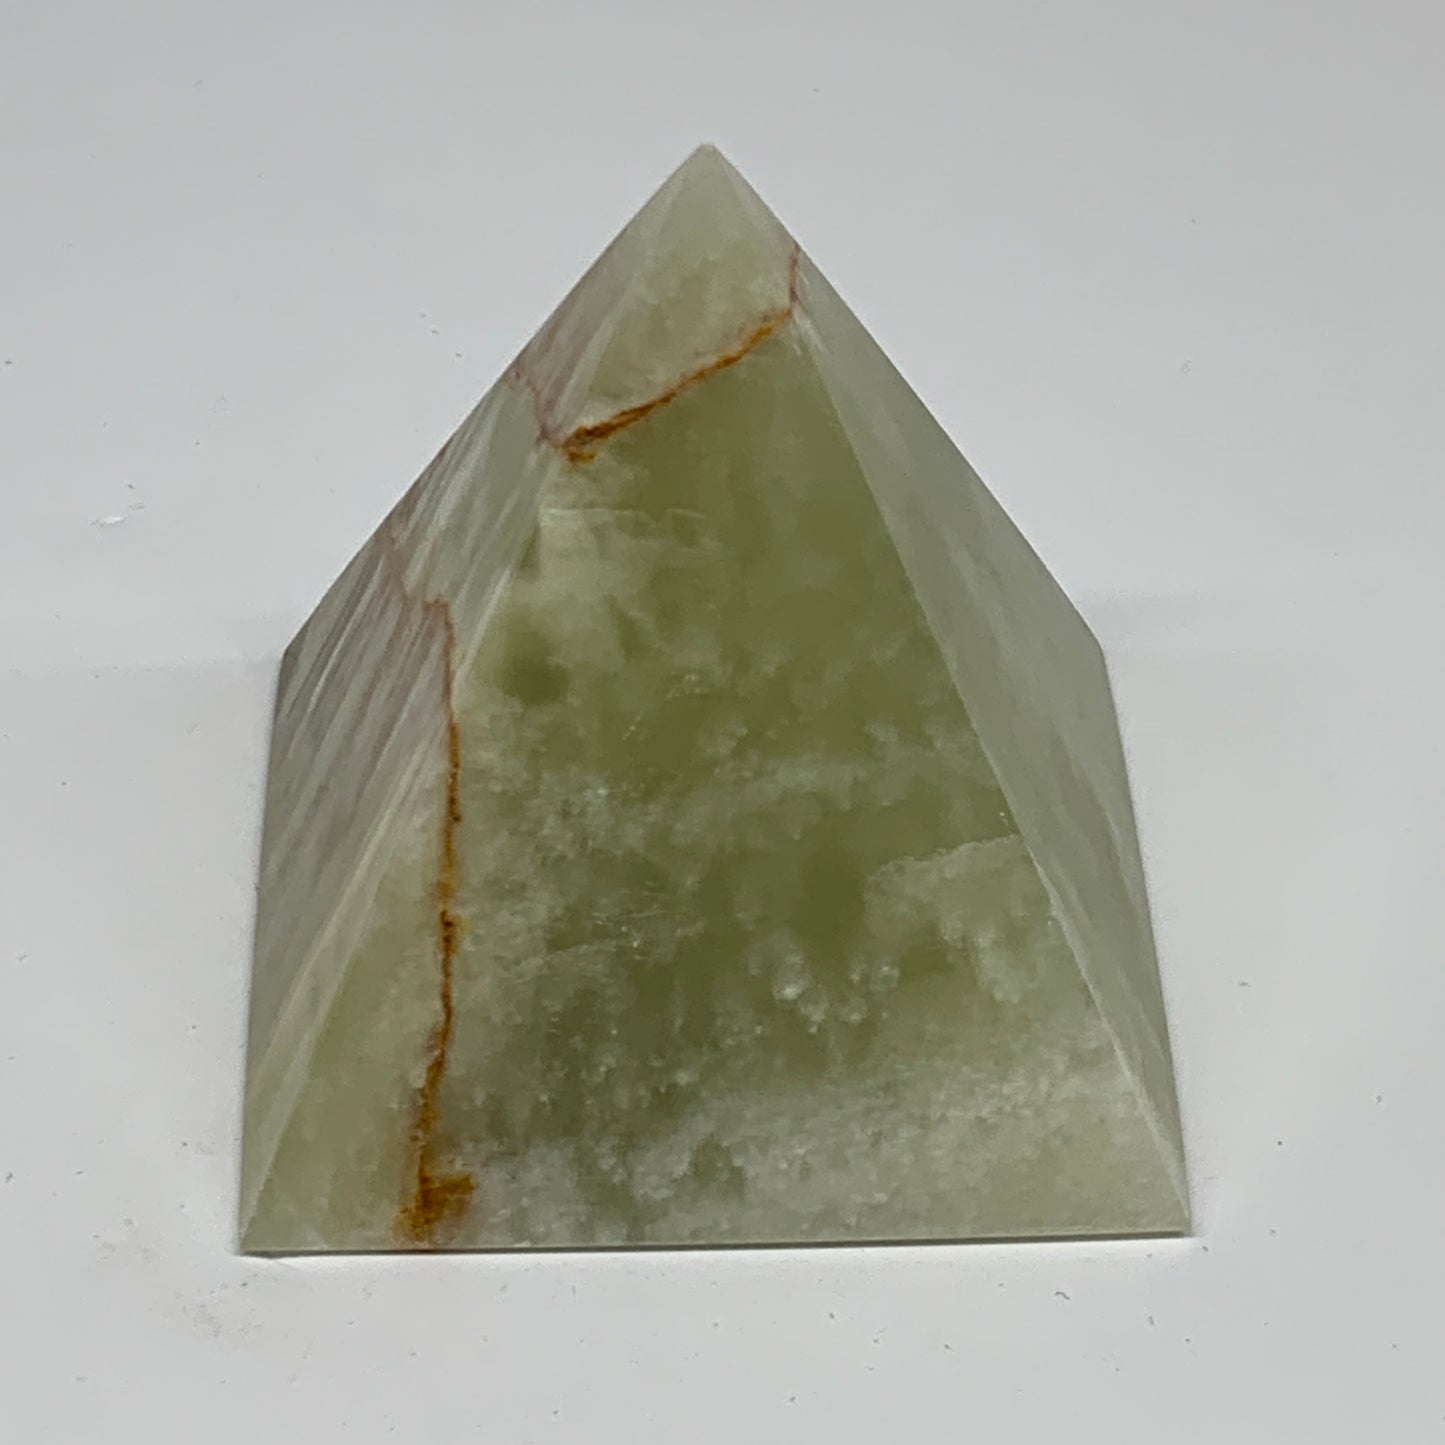 0.9 lbs, 3"x2.9"x2.9", Green Onyx Pyramid Gemstone Crystal, B32473